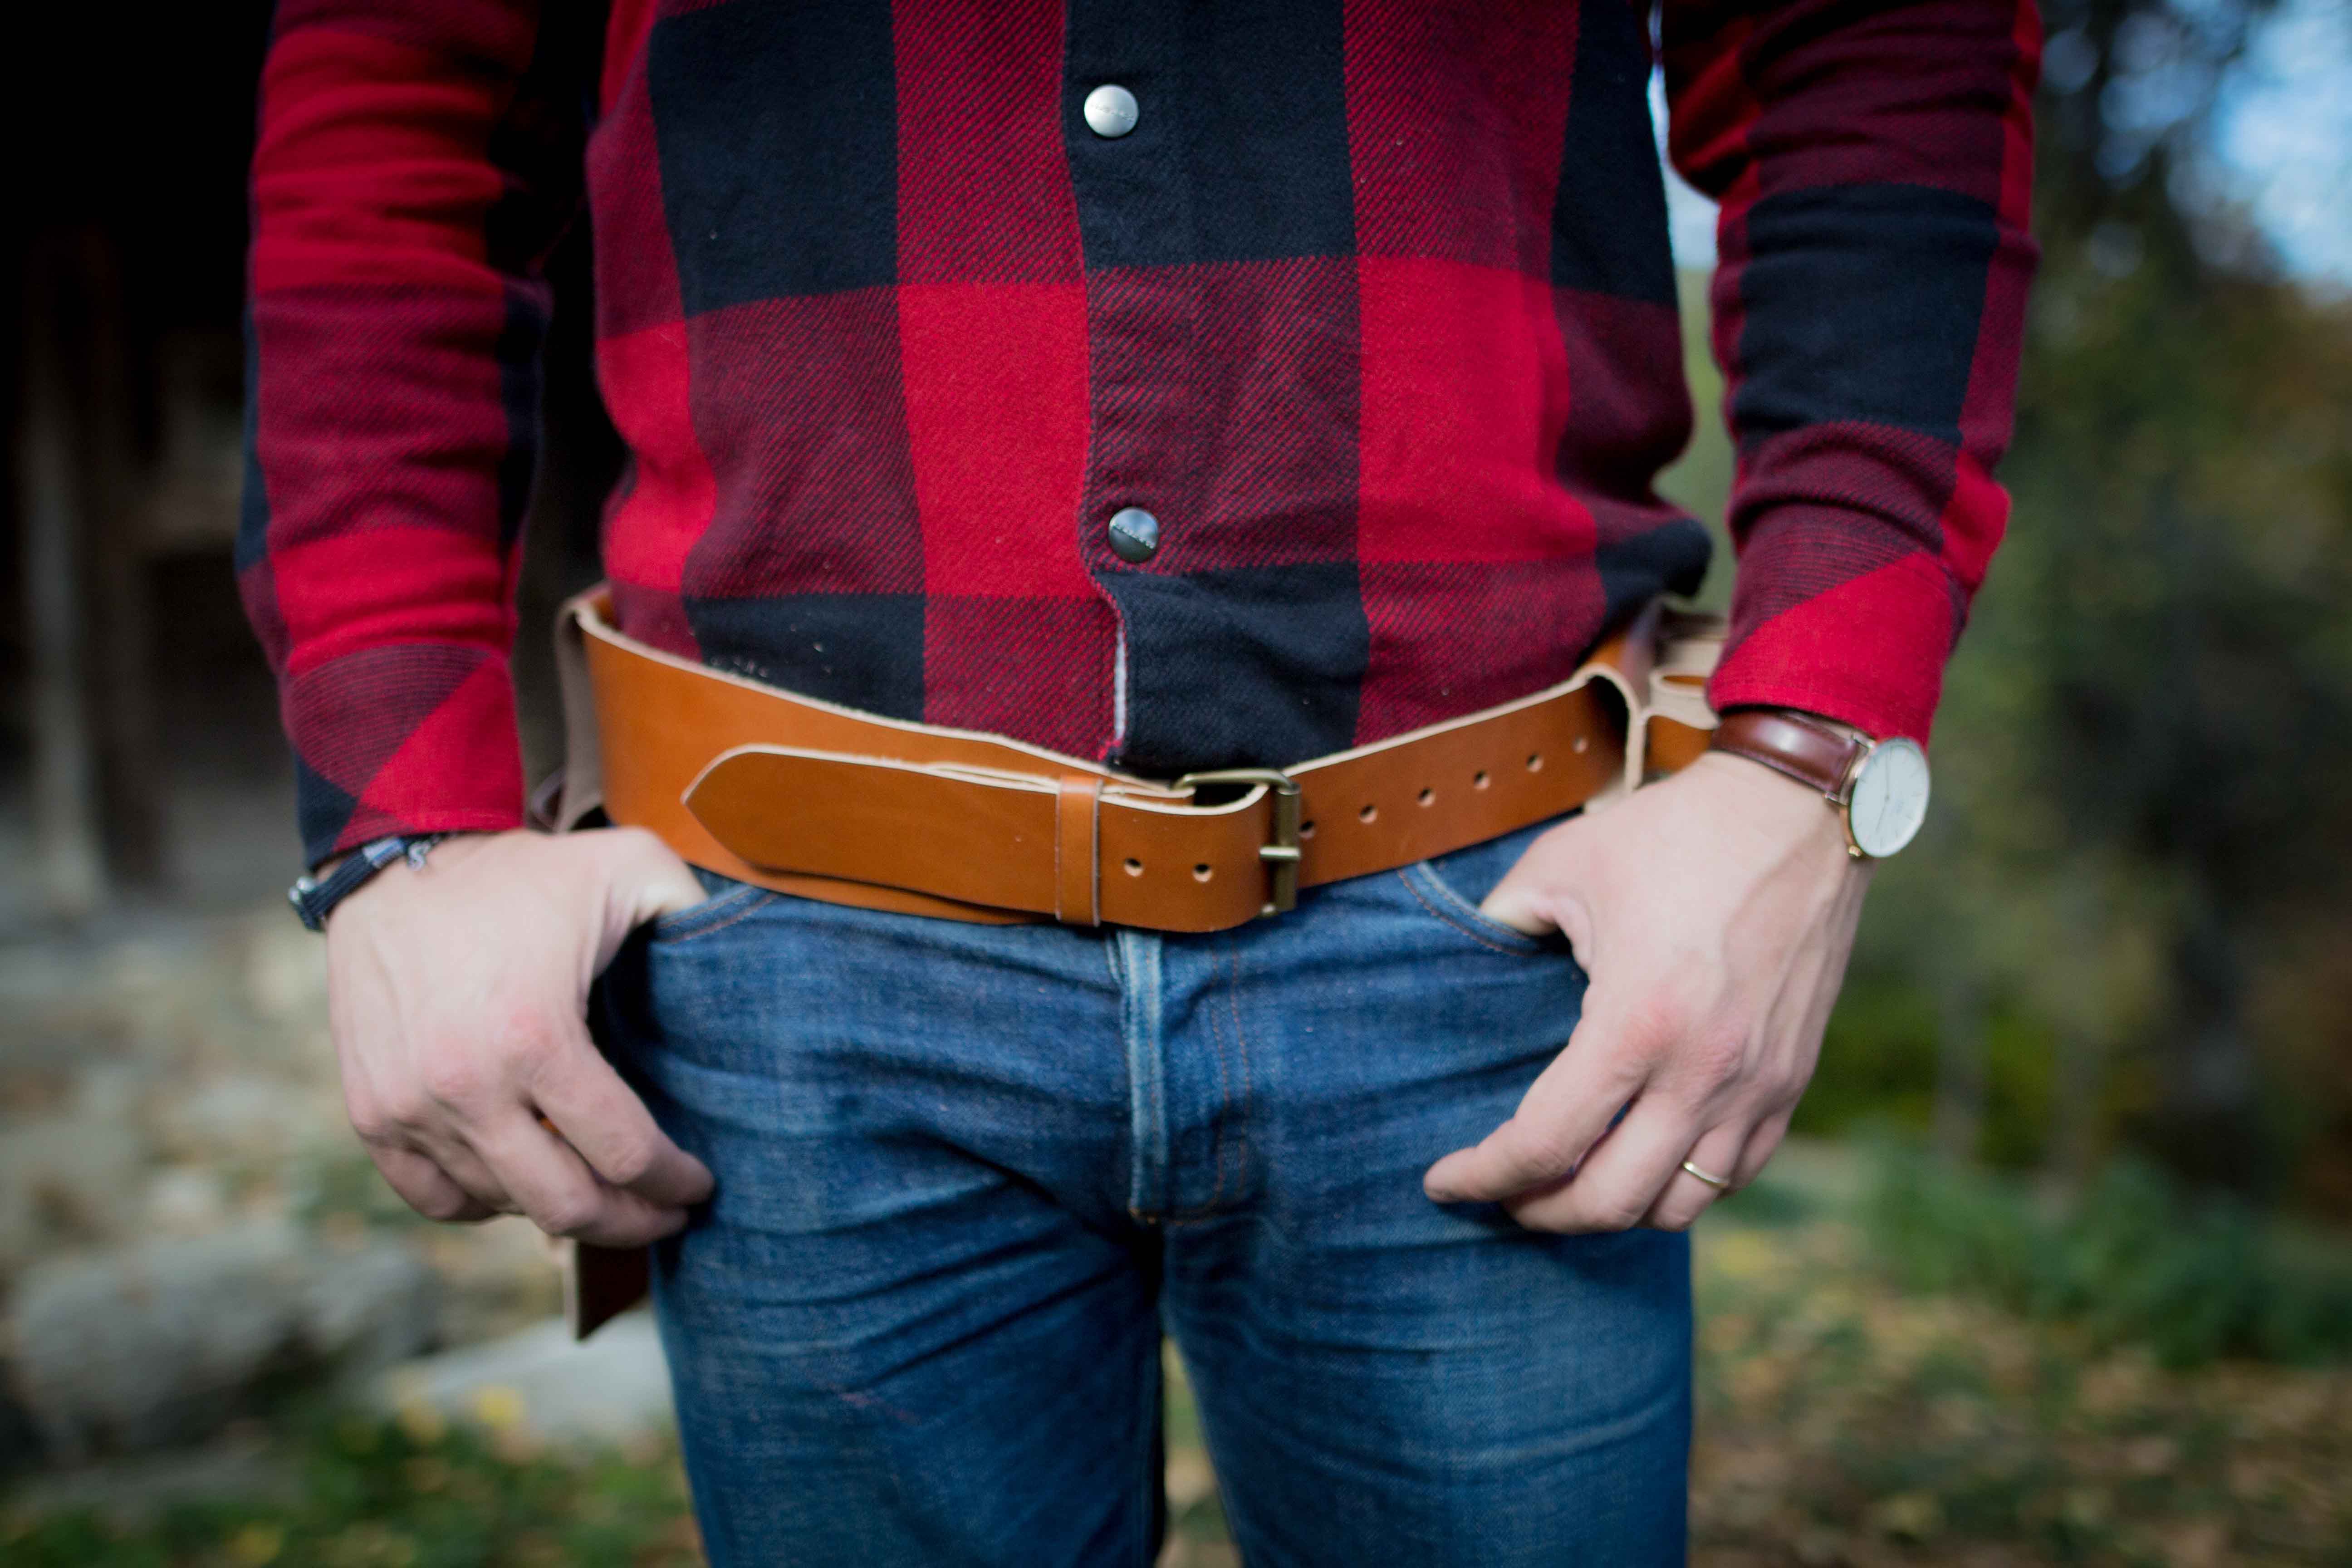 La ceinture porte outils – Les Compères